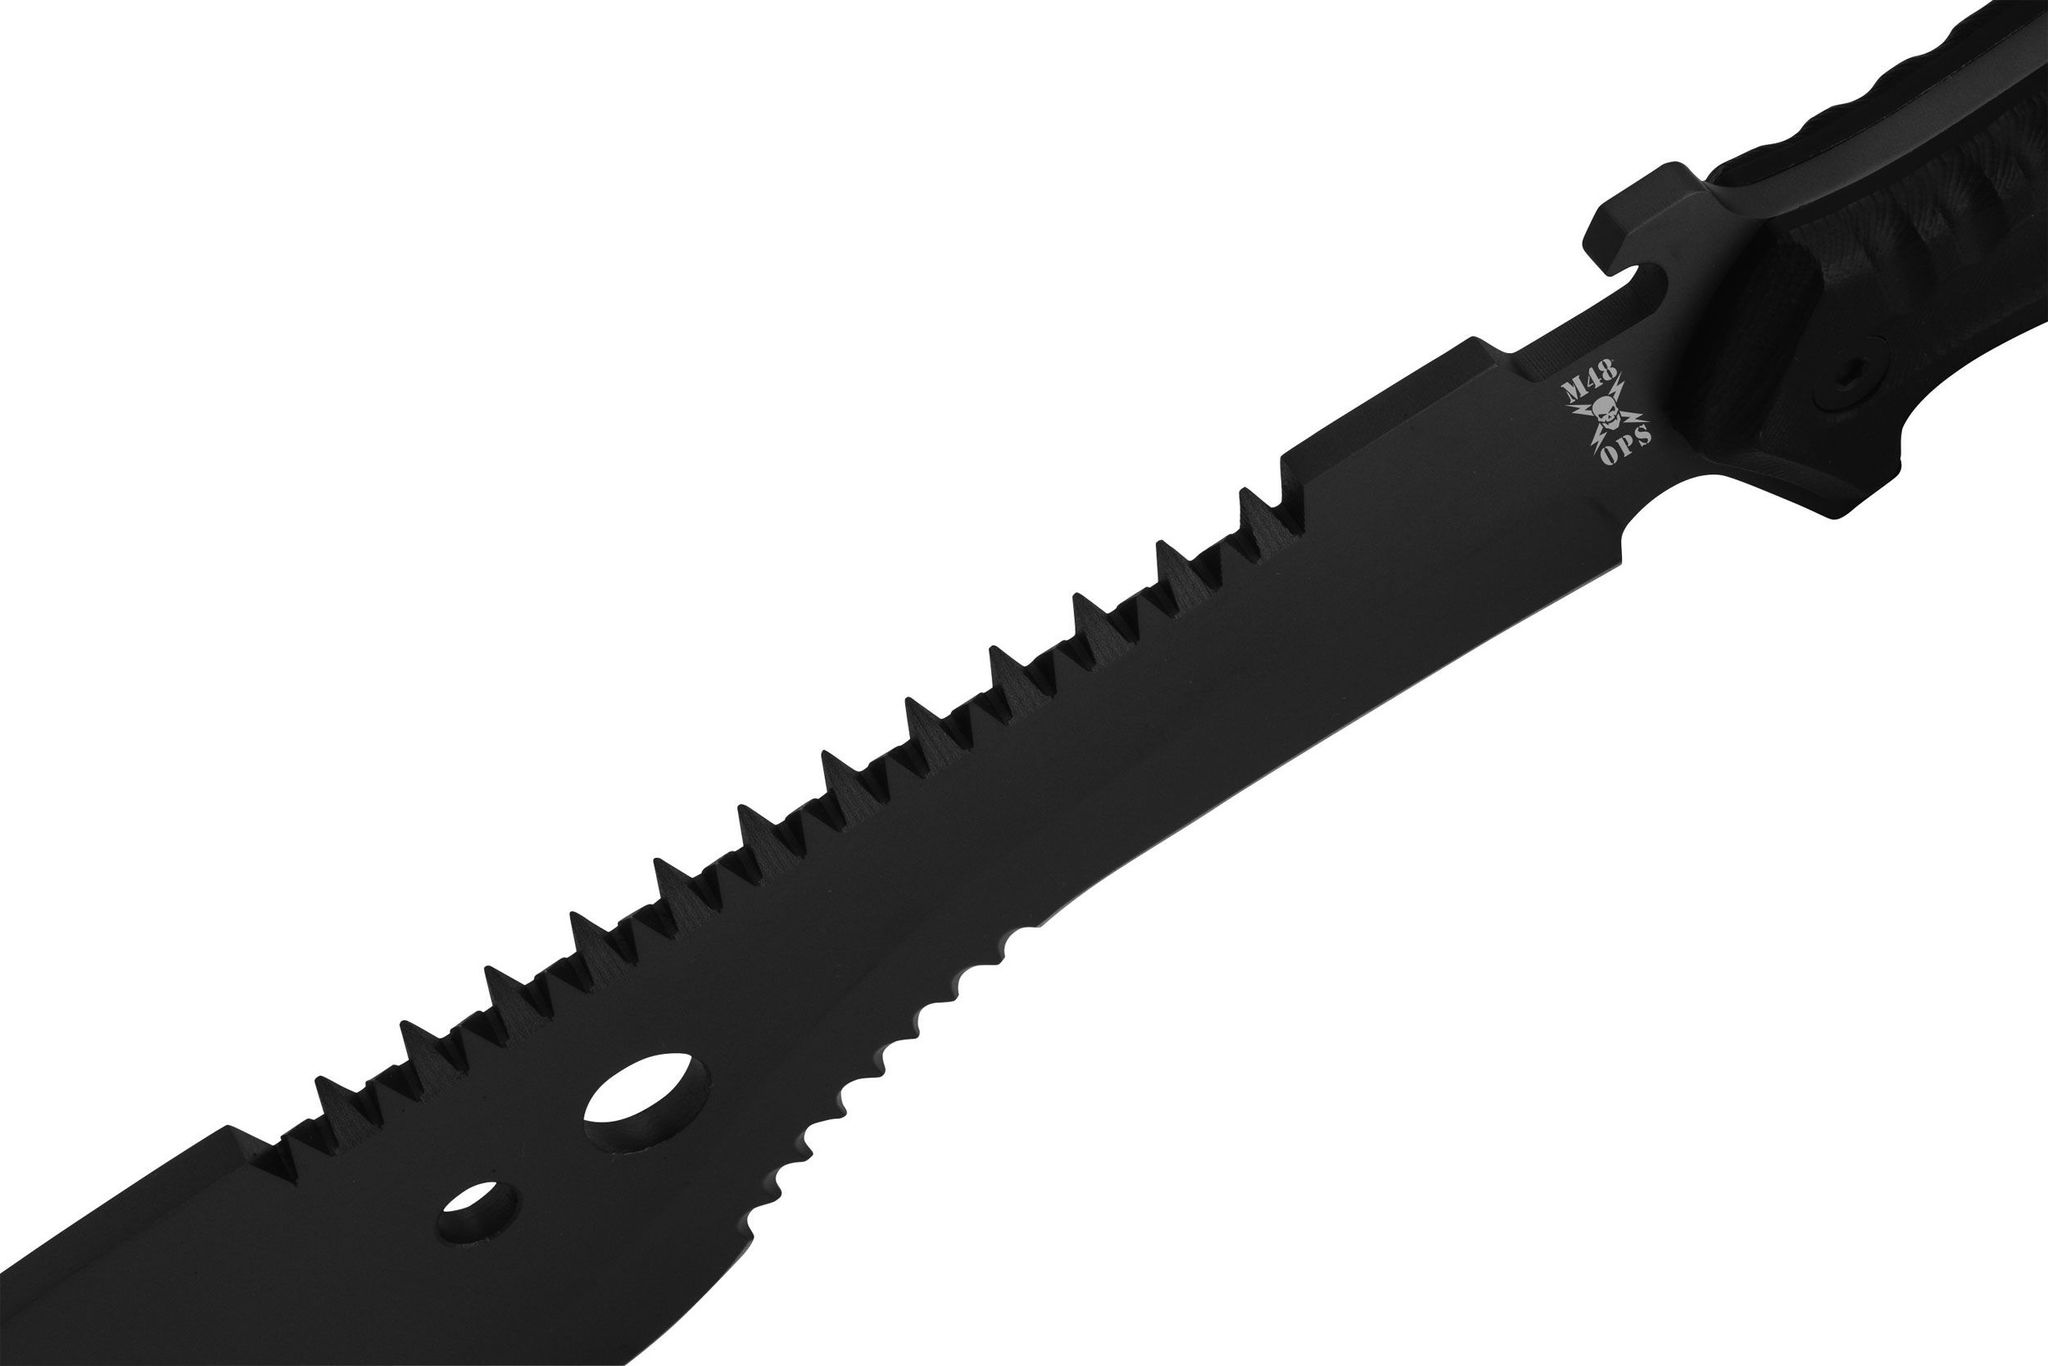 Мачете M48, United Cutlery, UC3119, нержавеющая сталь 420A с титановым покрытием, рукоять пластик, чёрный от Ножиков